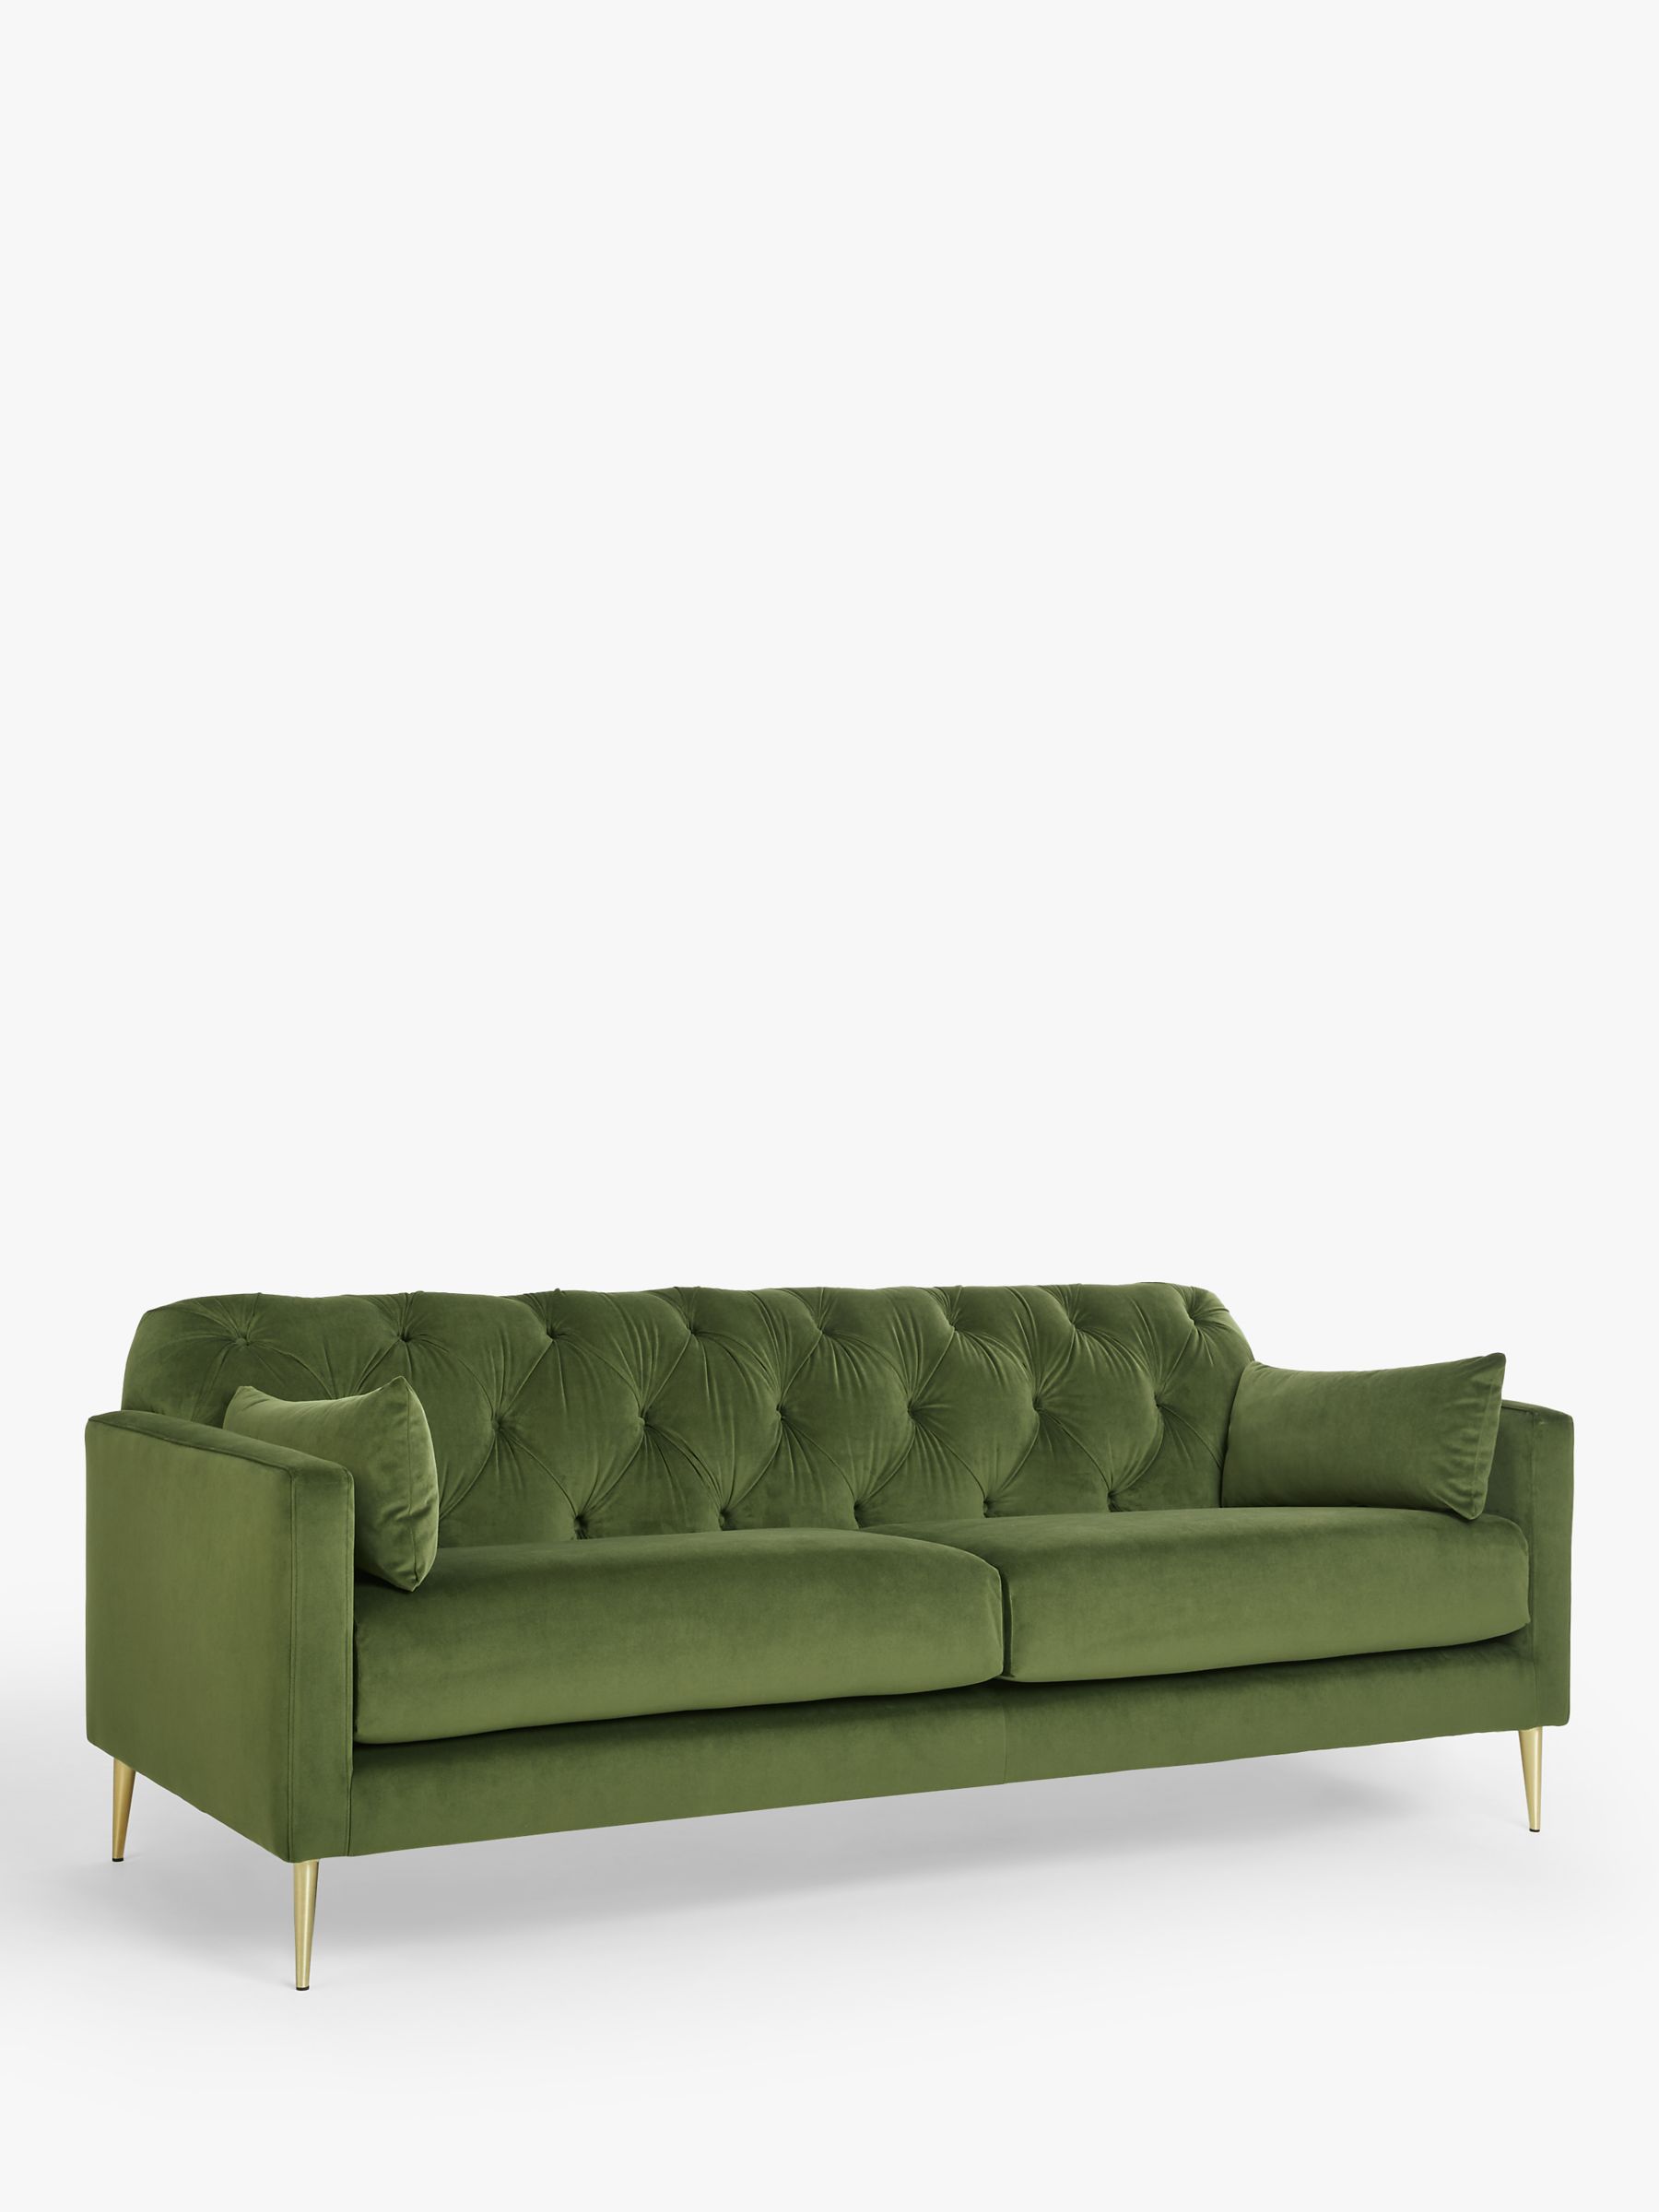 Photo of Swoon mendel large 3 seater sofa gold leg fern green velvet